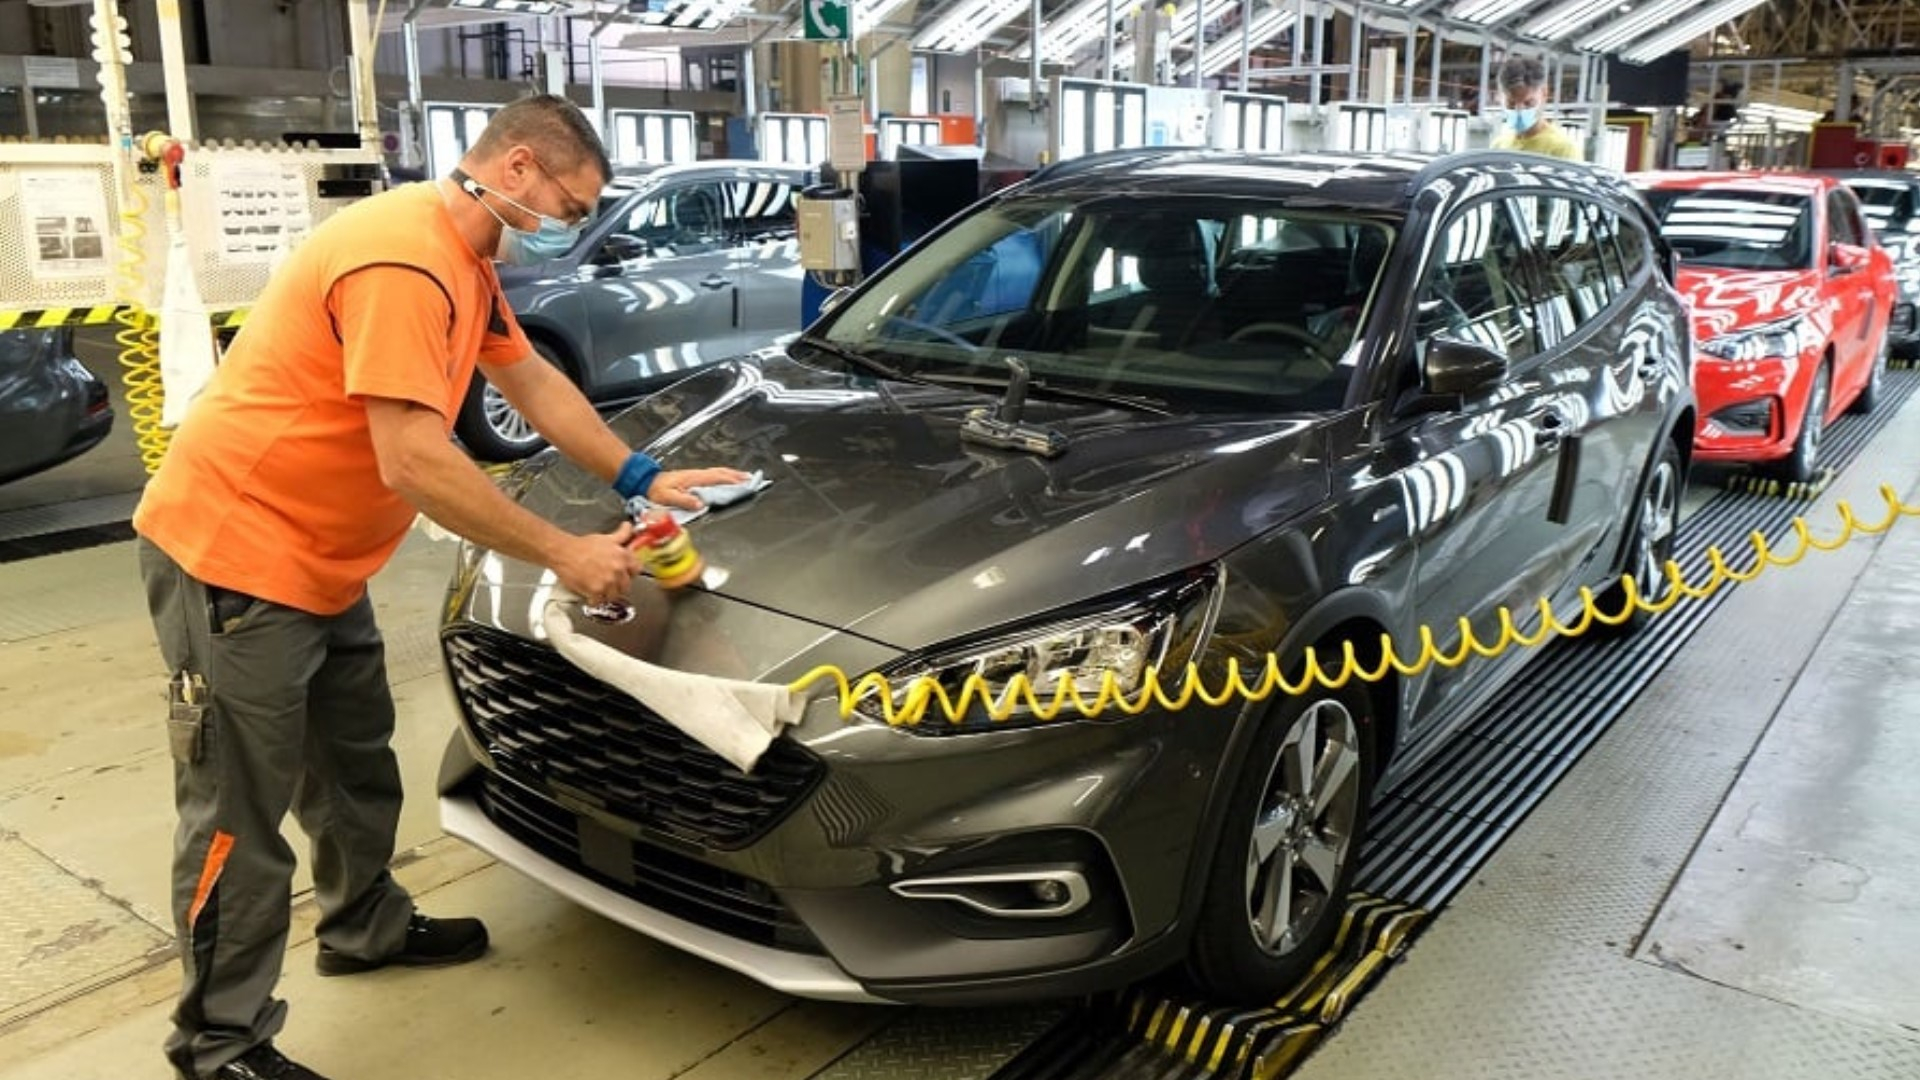 Strike Break at Ford Focus Factory in Germany